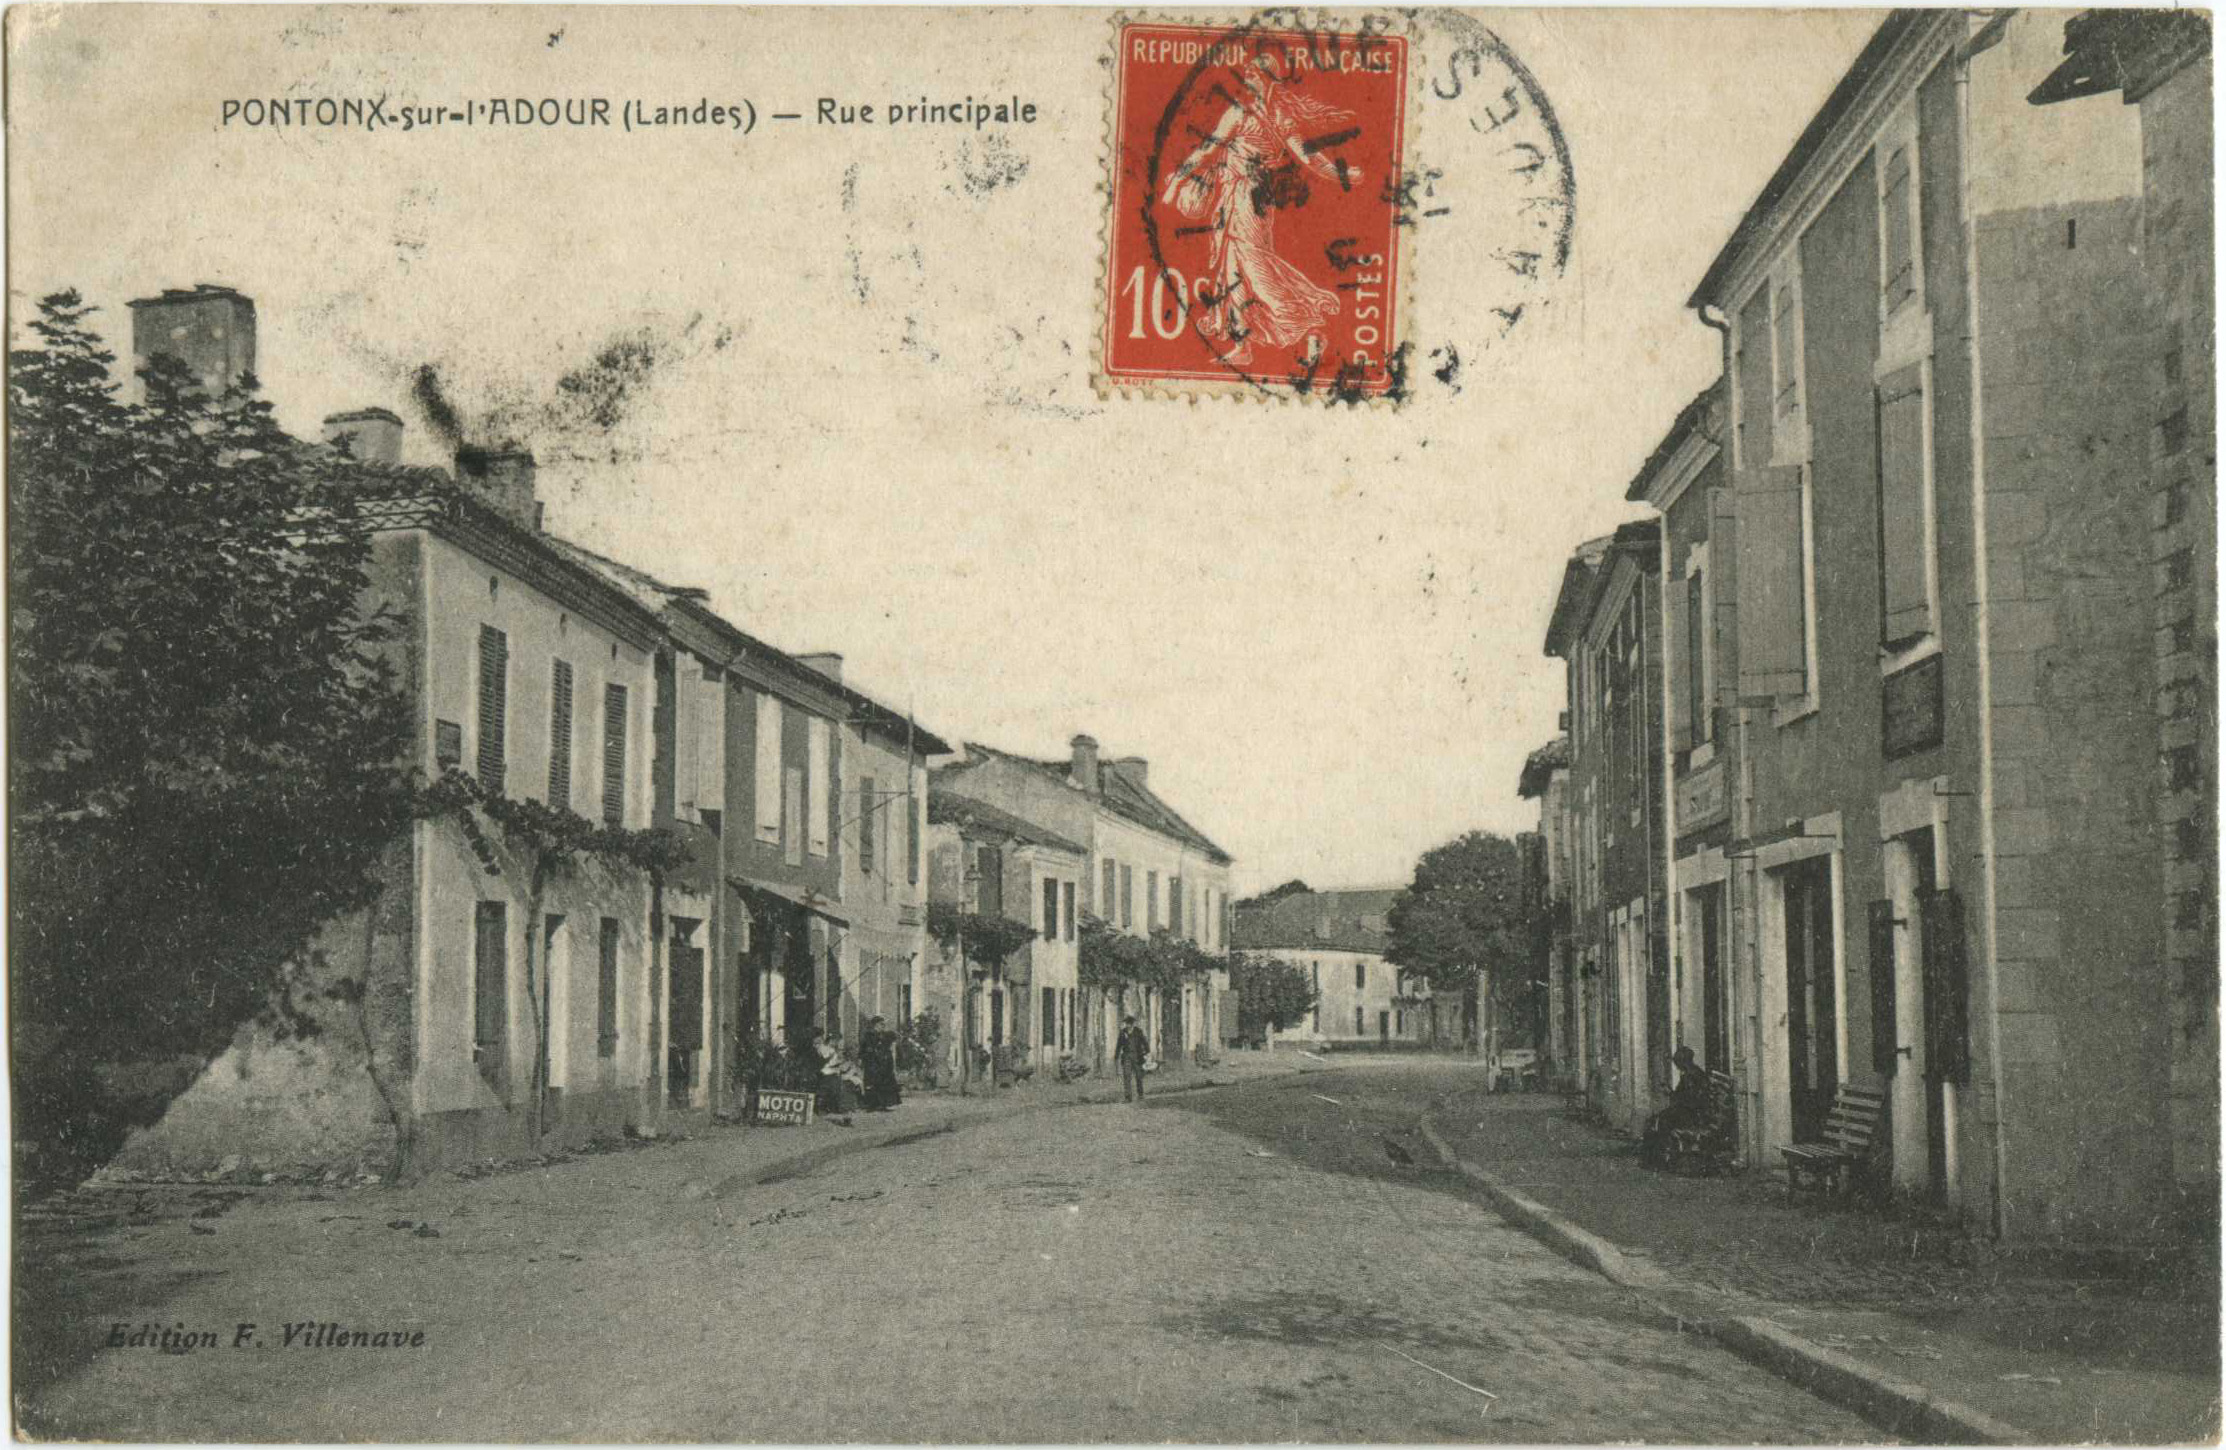 Pontonx-sur-l'Adour - Rue principale